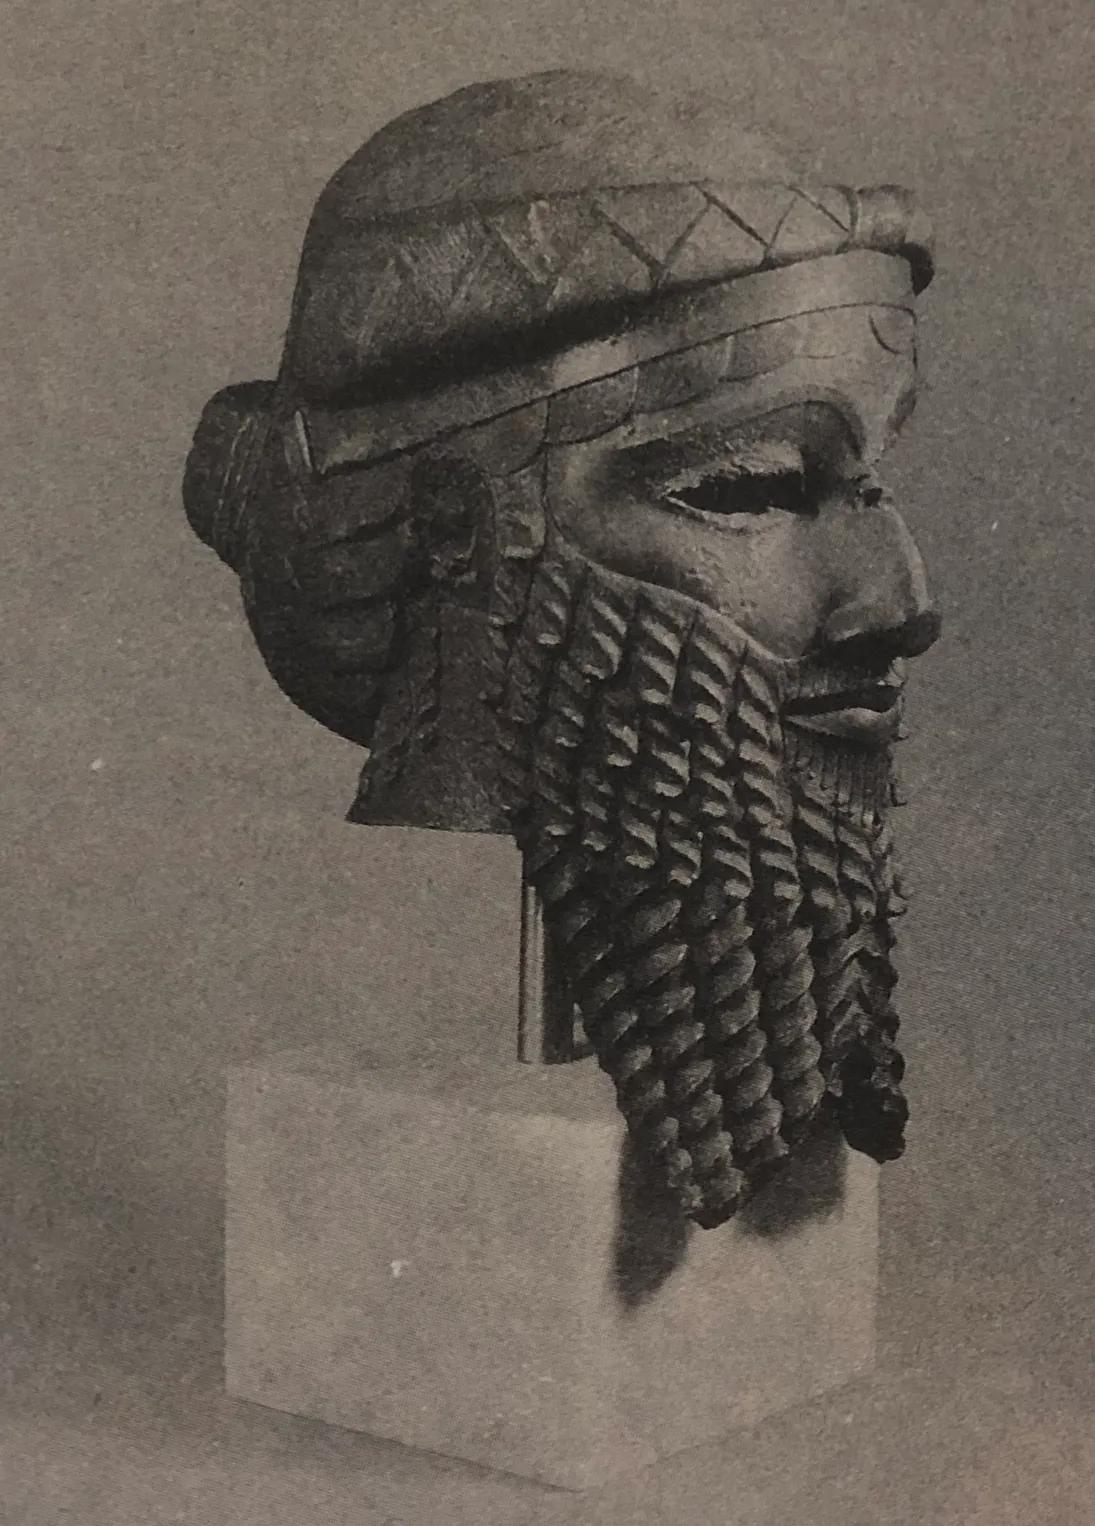 第一巴比伦帝国与人类历史最早的一部法典——伟大的汉谟拉比法典